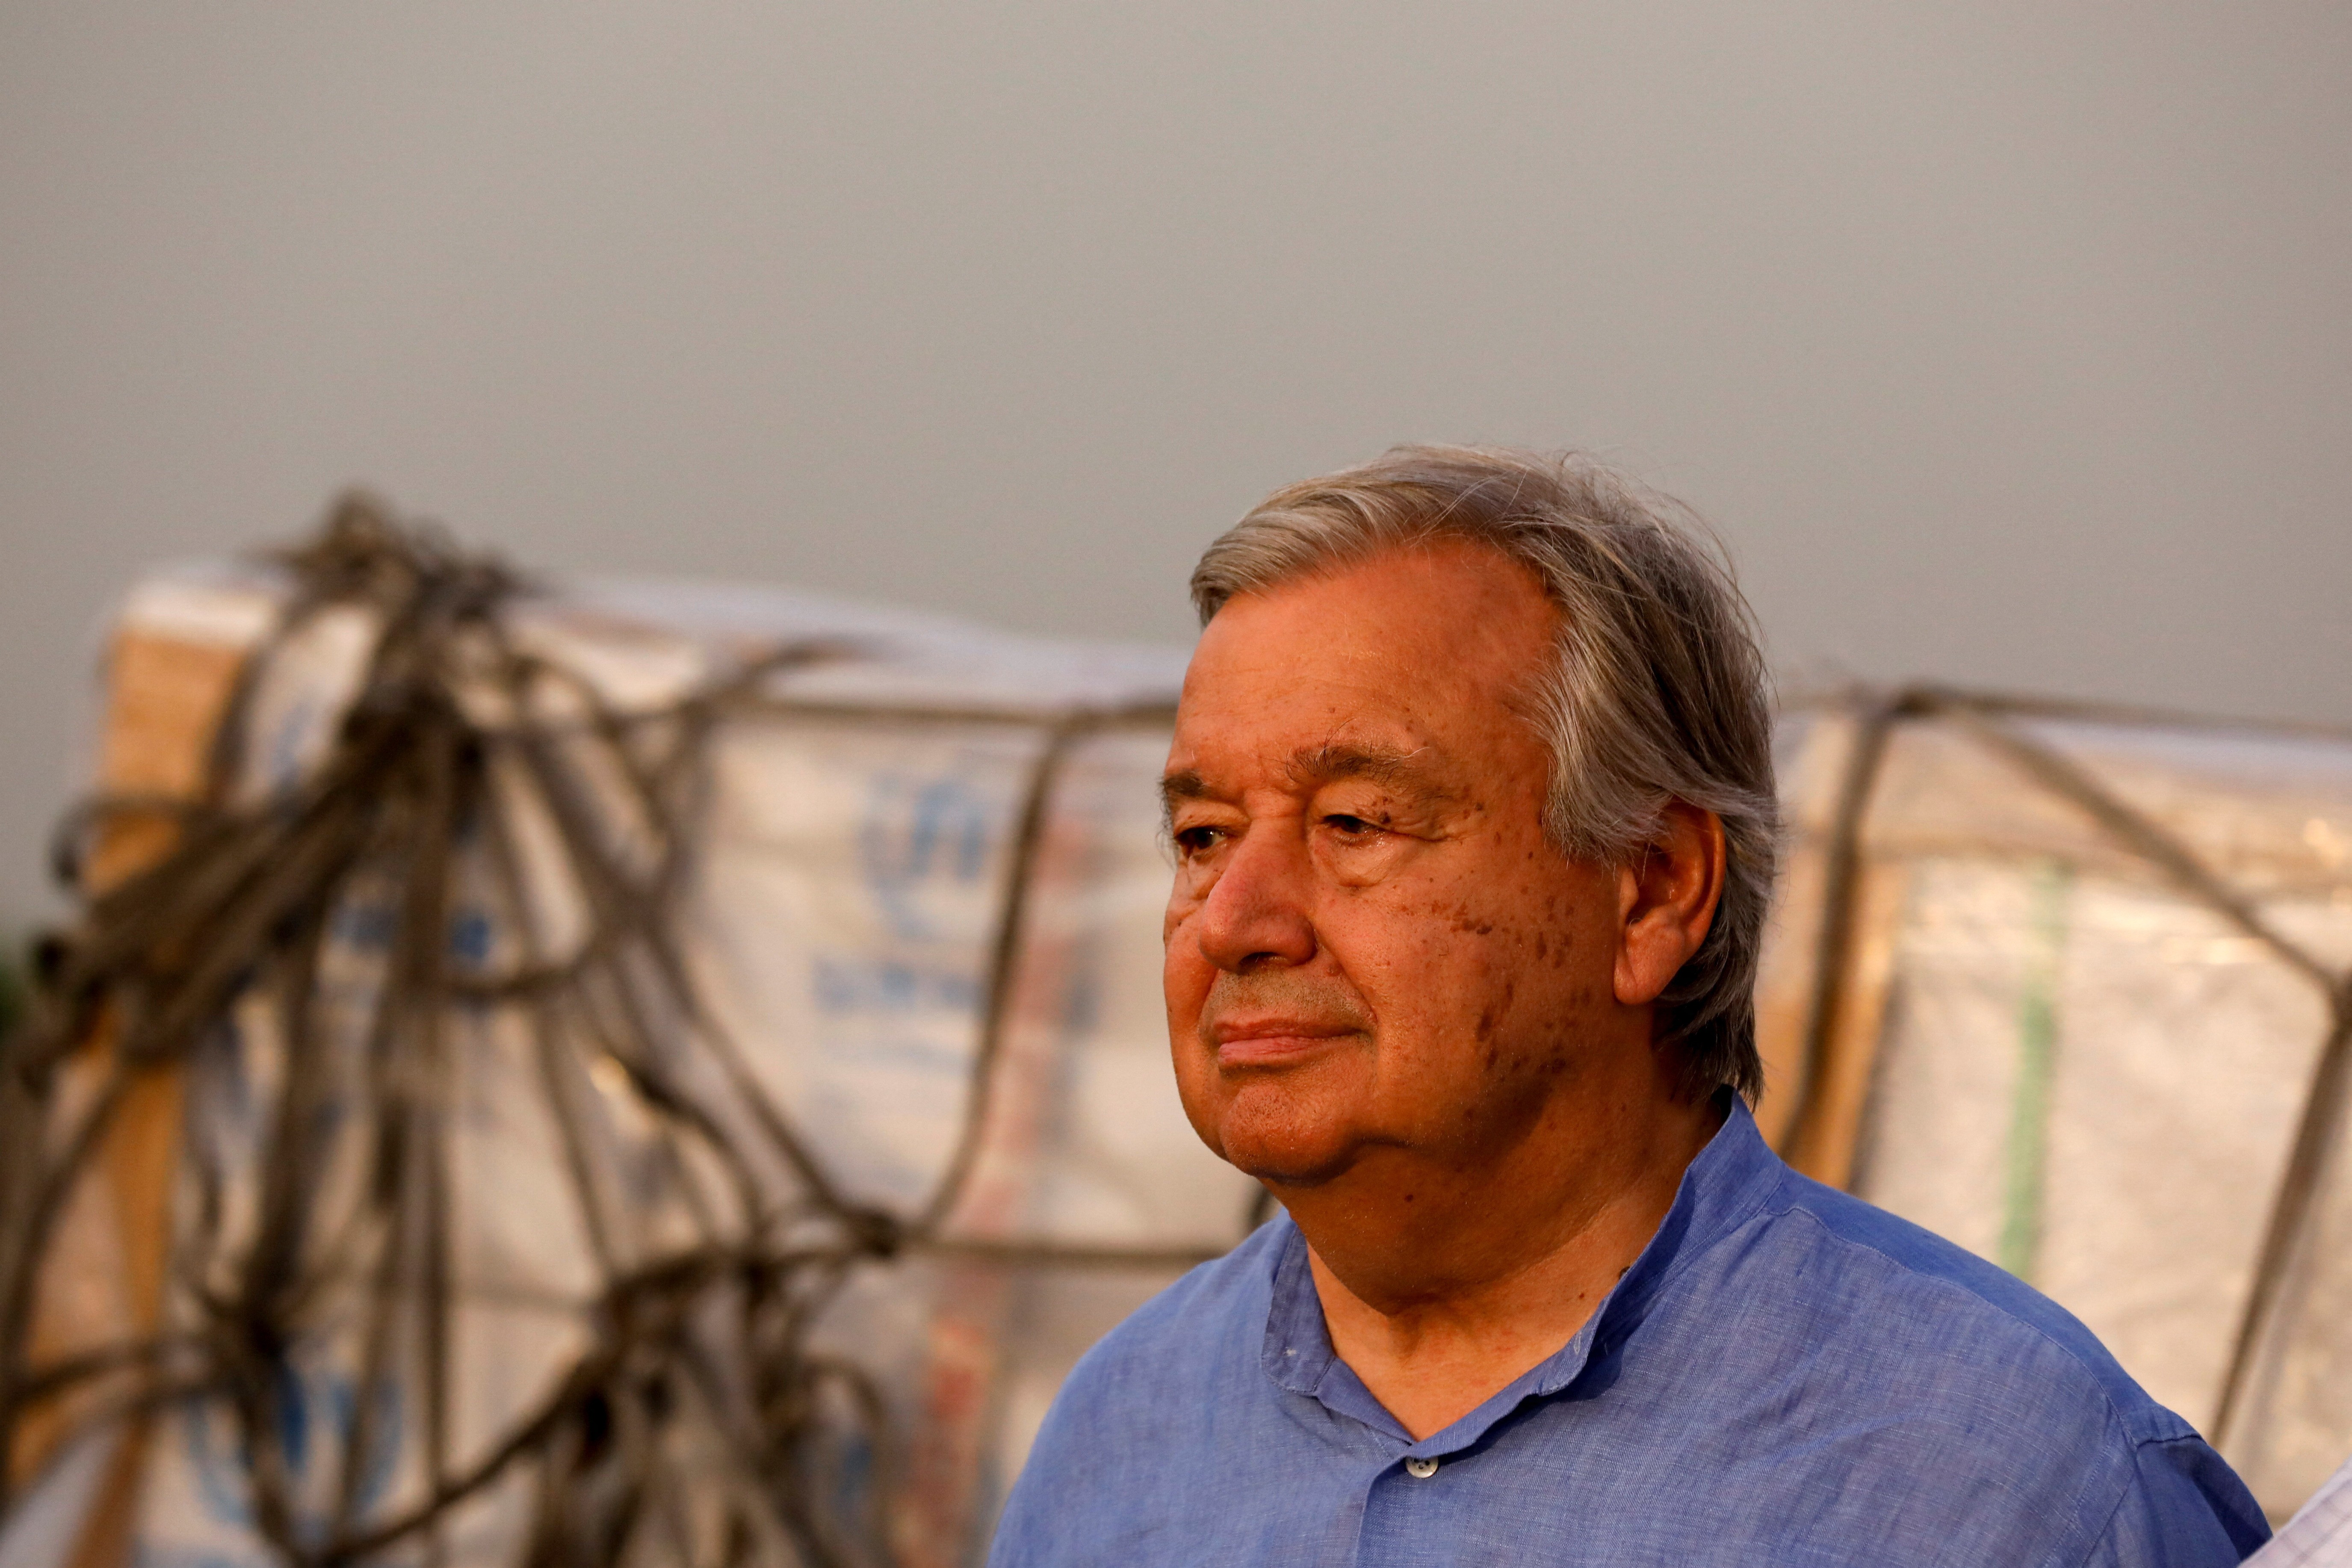 Secretário-geral da ONU, António Guterres, com doações humanitárias ao fundo, durante entrevista coletiva em meio a visita a áreas atingidas por enchentes em Karachi, no Paquistão (Foto: REUTERS/Akhtar Soomro)